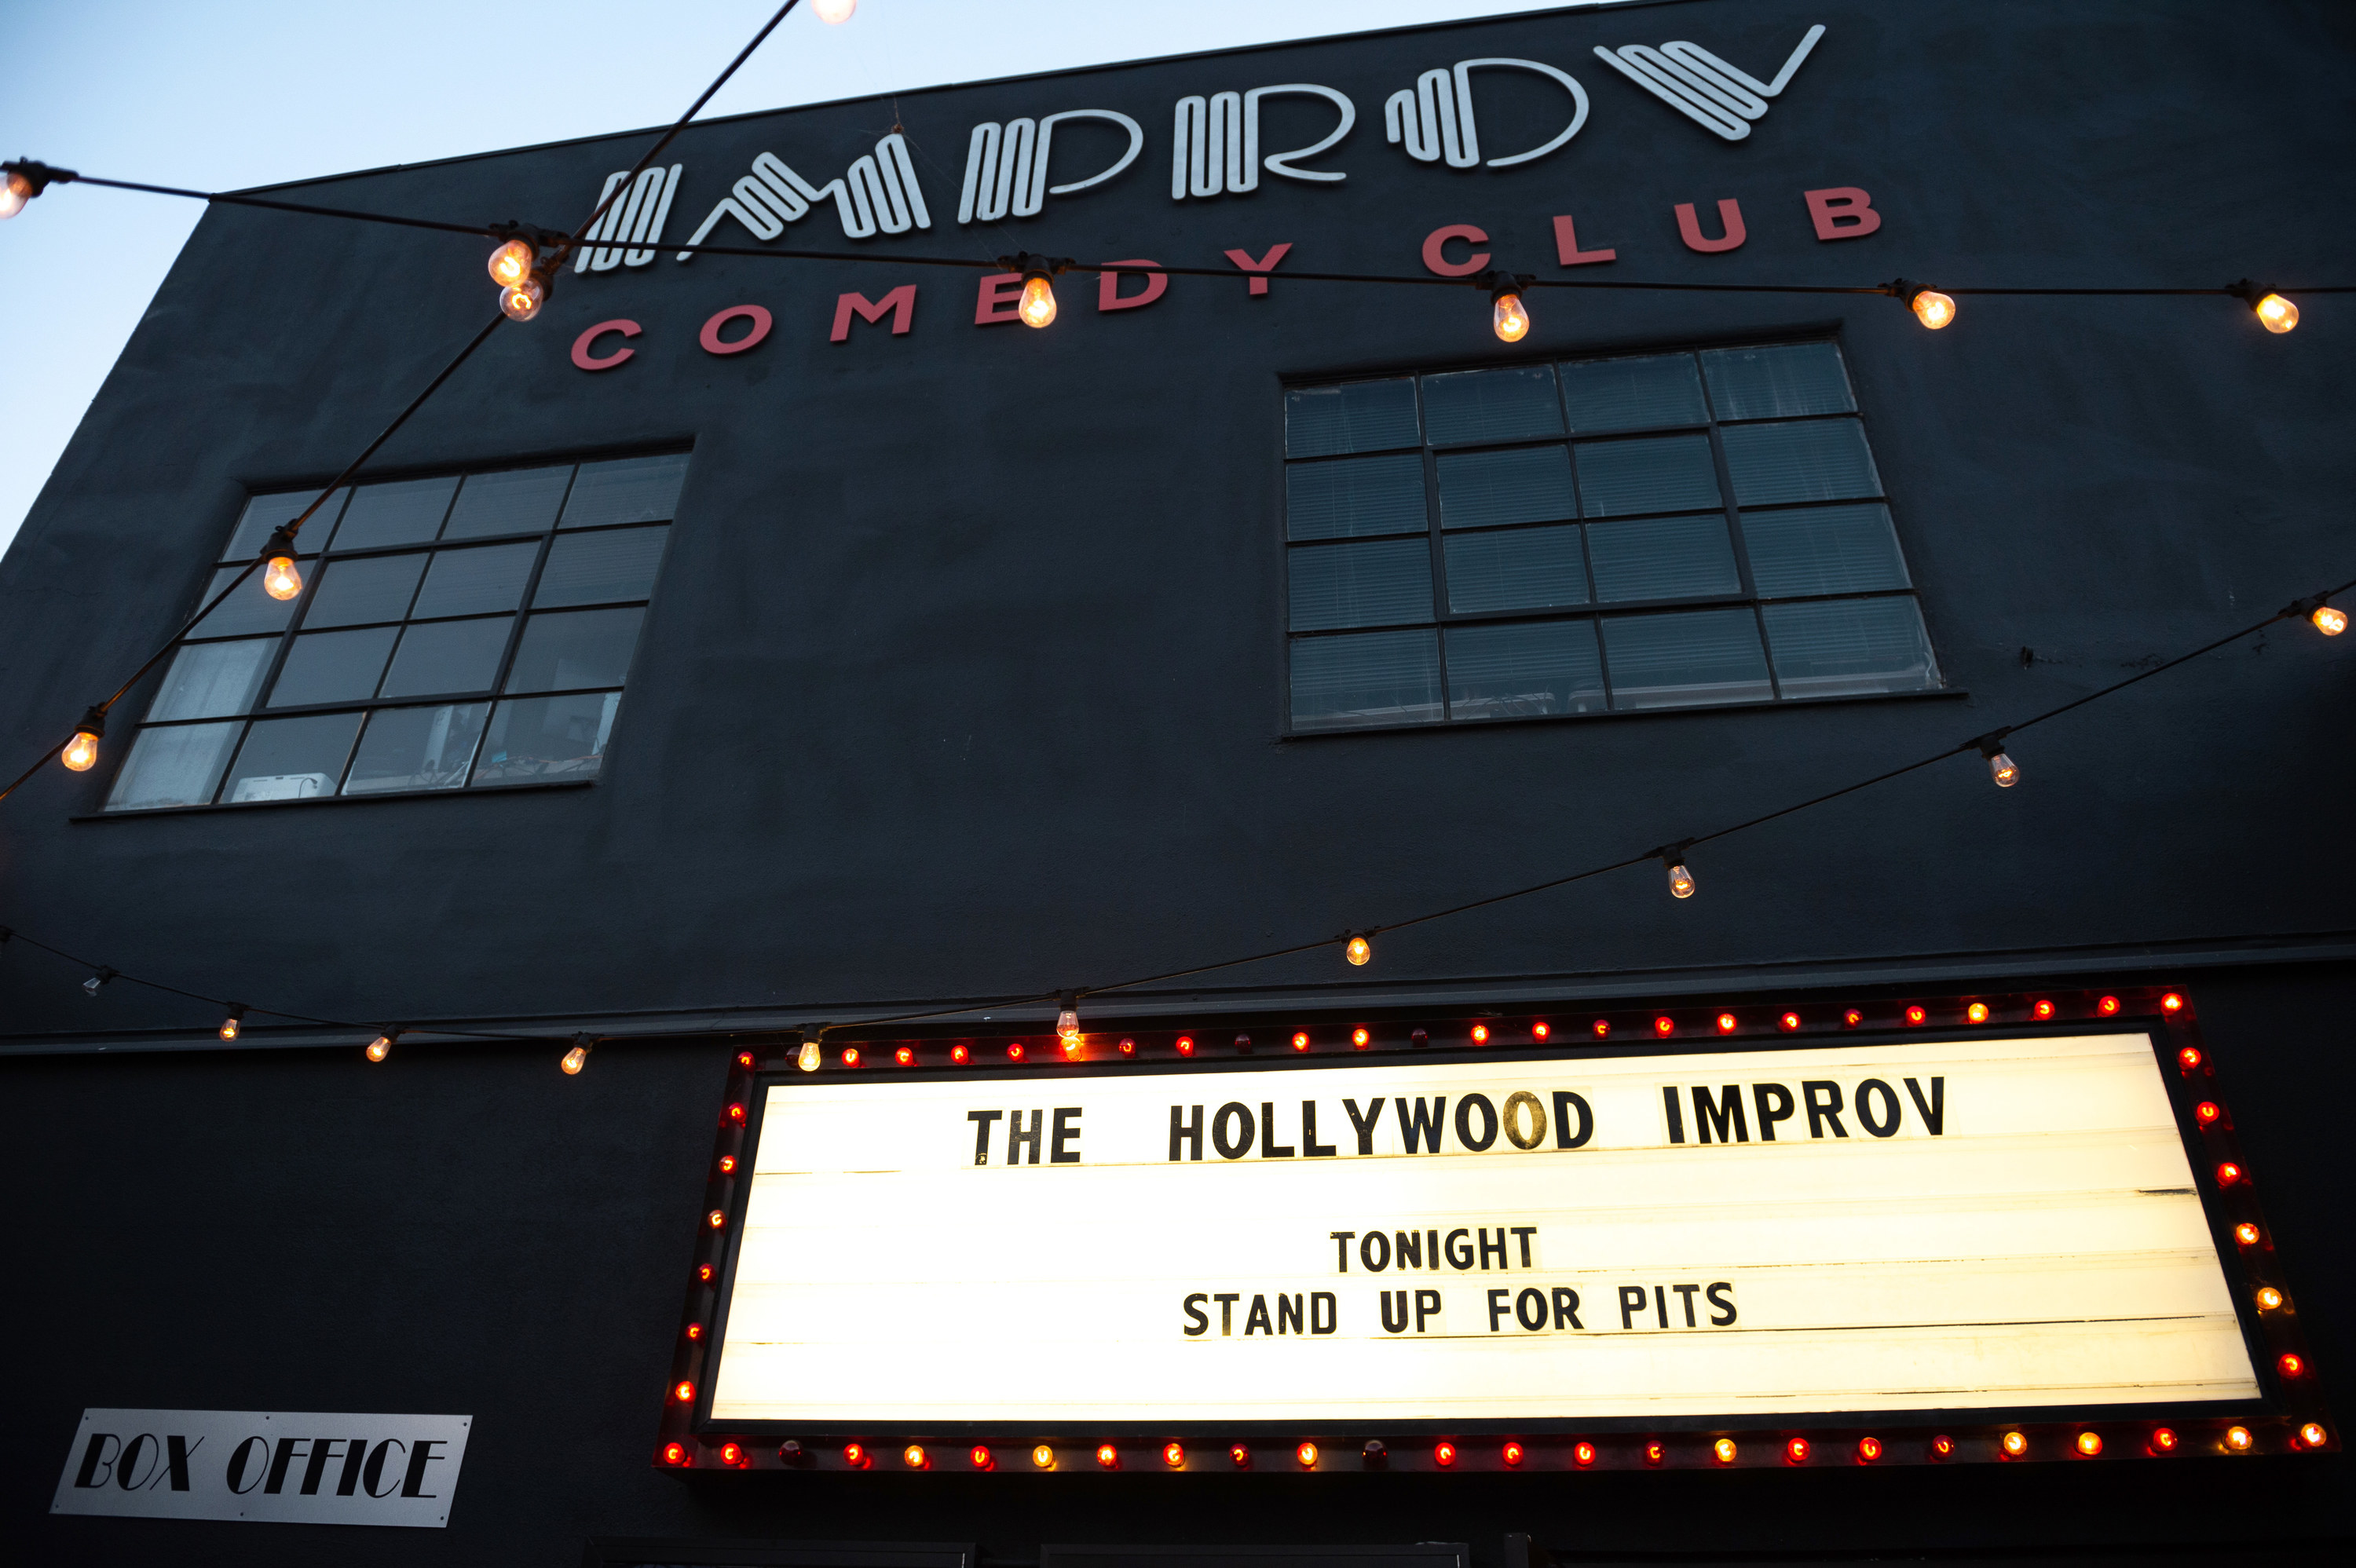 Exterior of the Hollywood Improv comedy club.